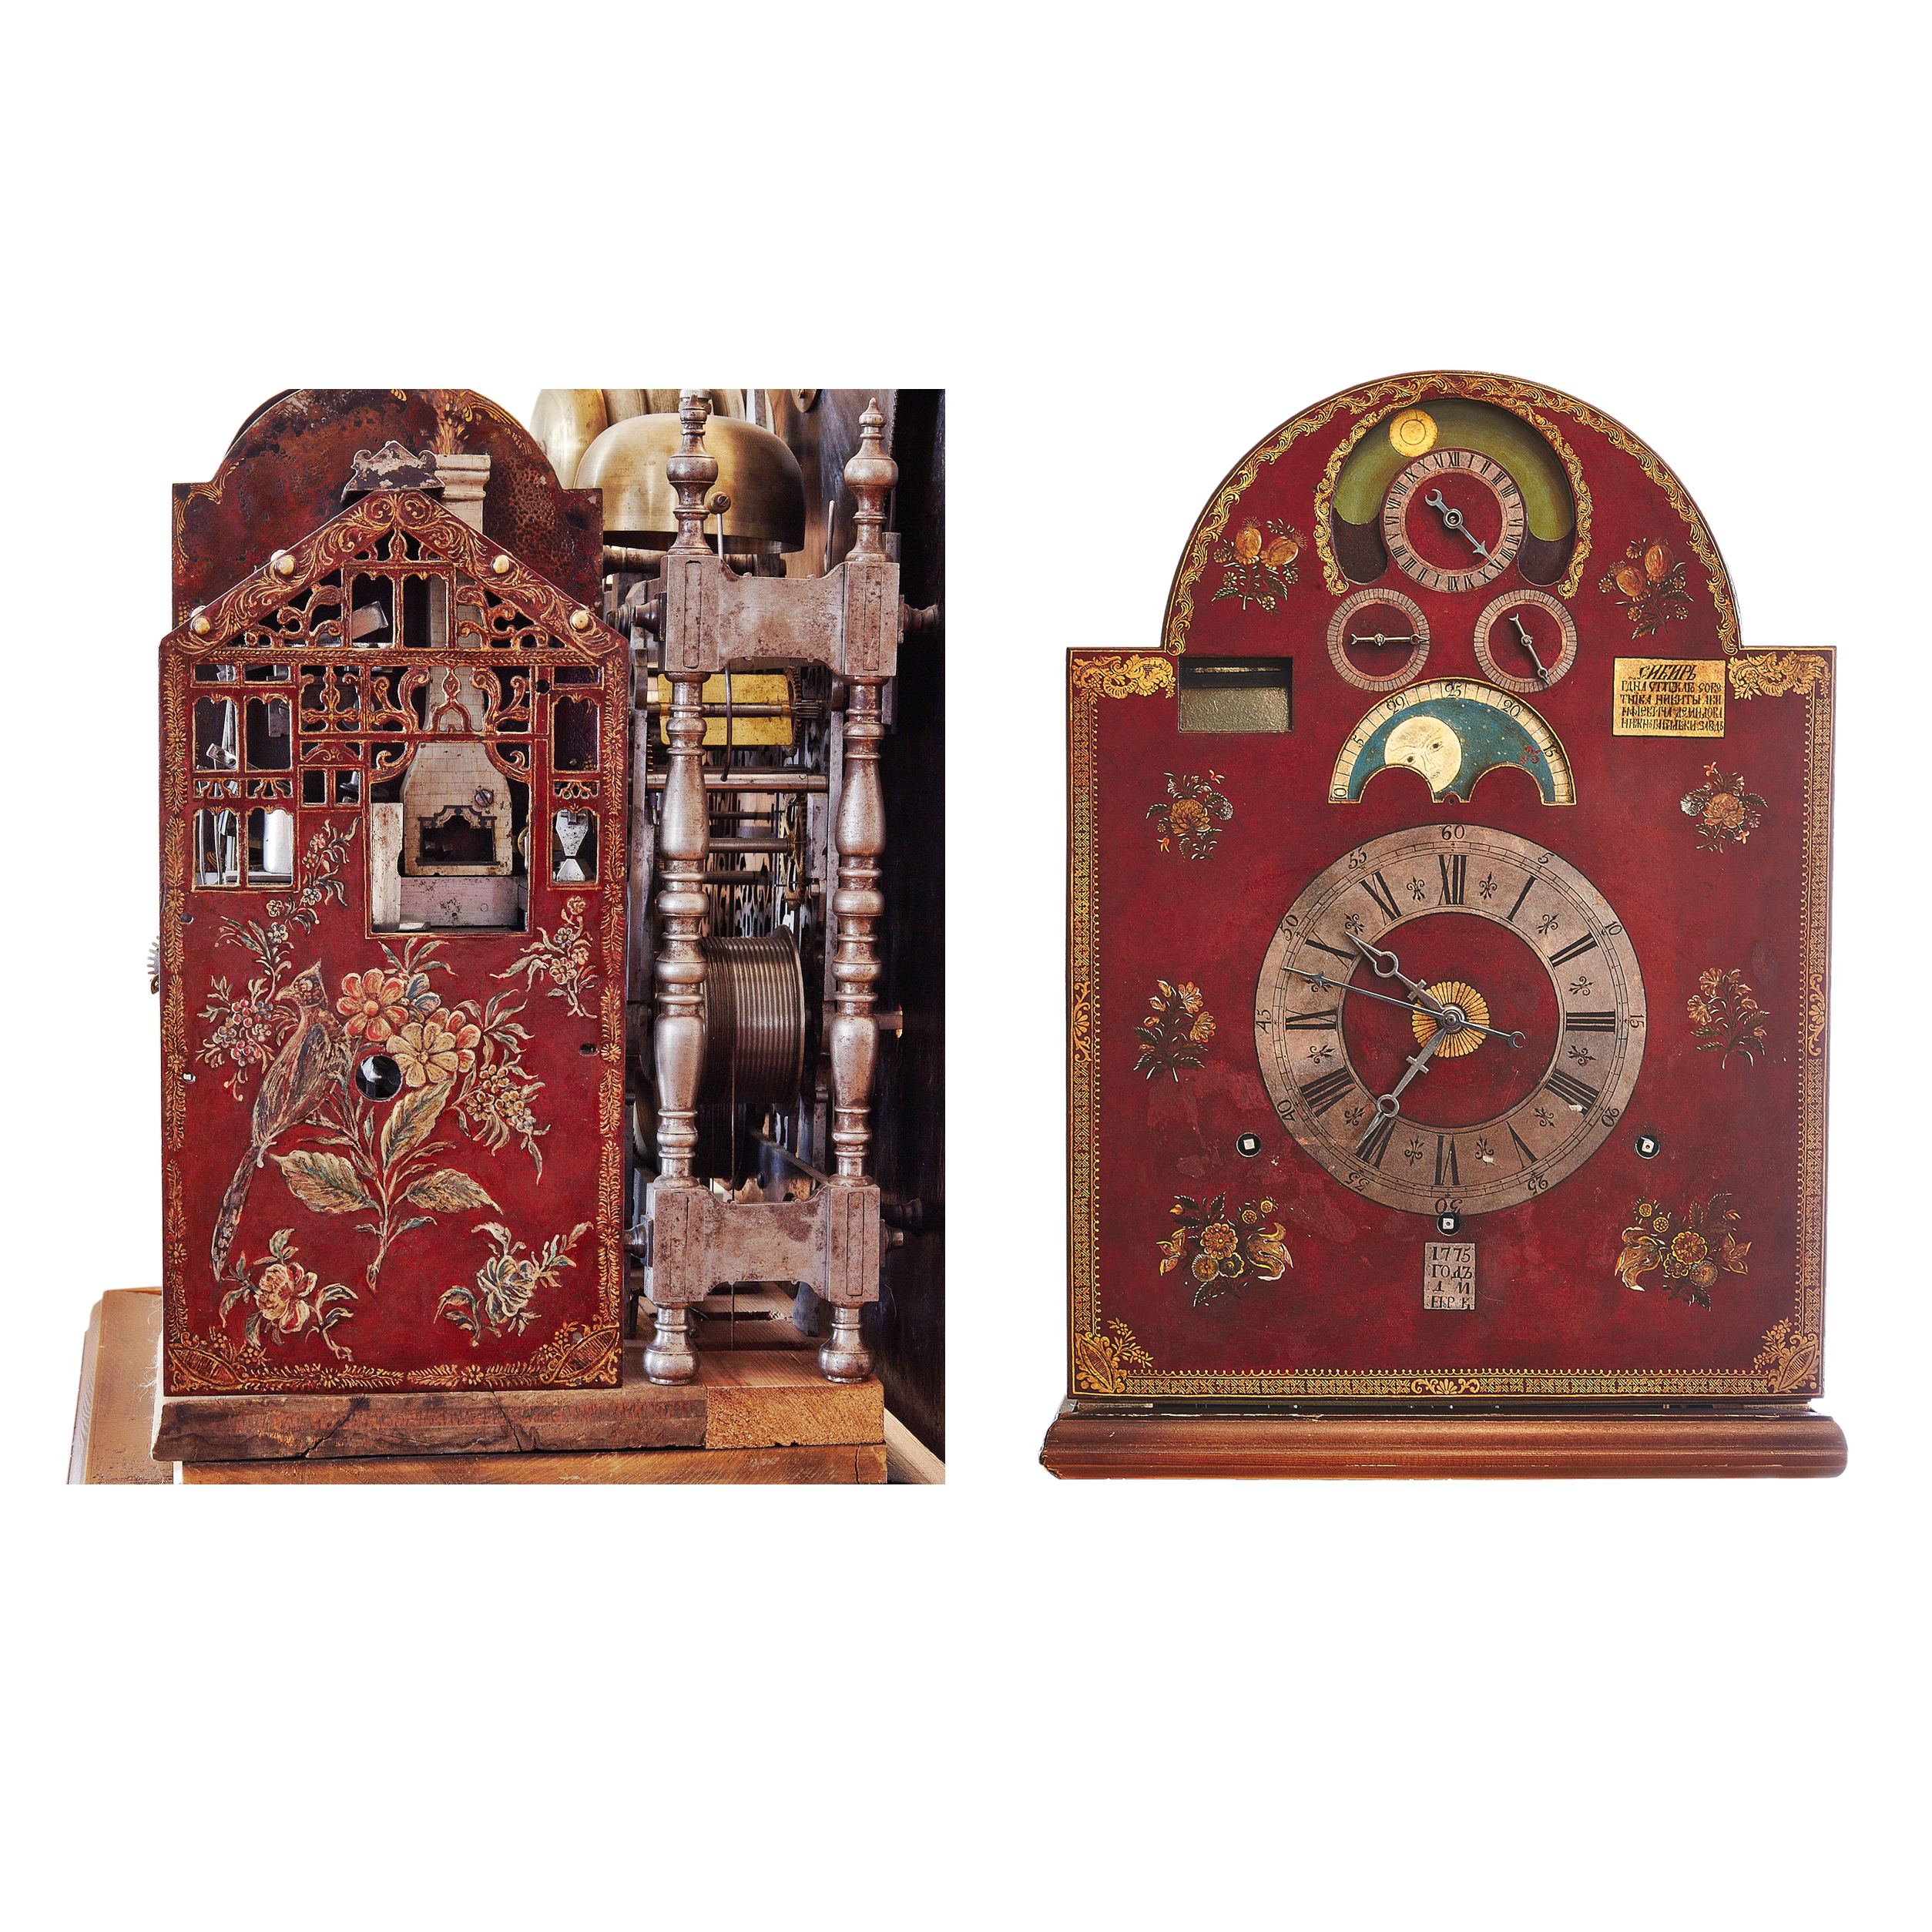 Изготовляемые часы кузнецами были. Астрономические часы Кузнецова Жепинского. Астрономические часы Егора Кузнецова.